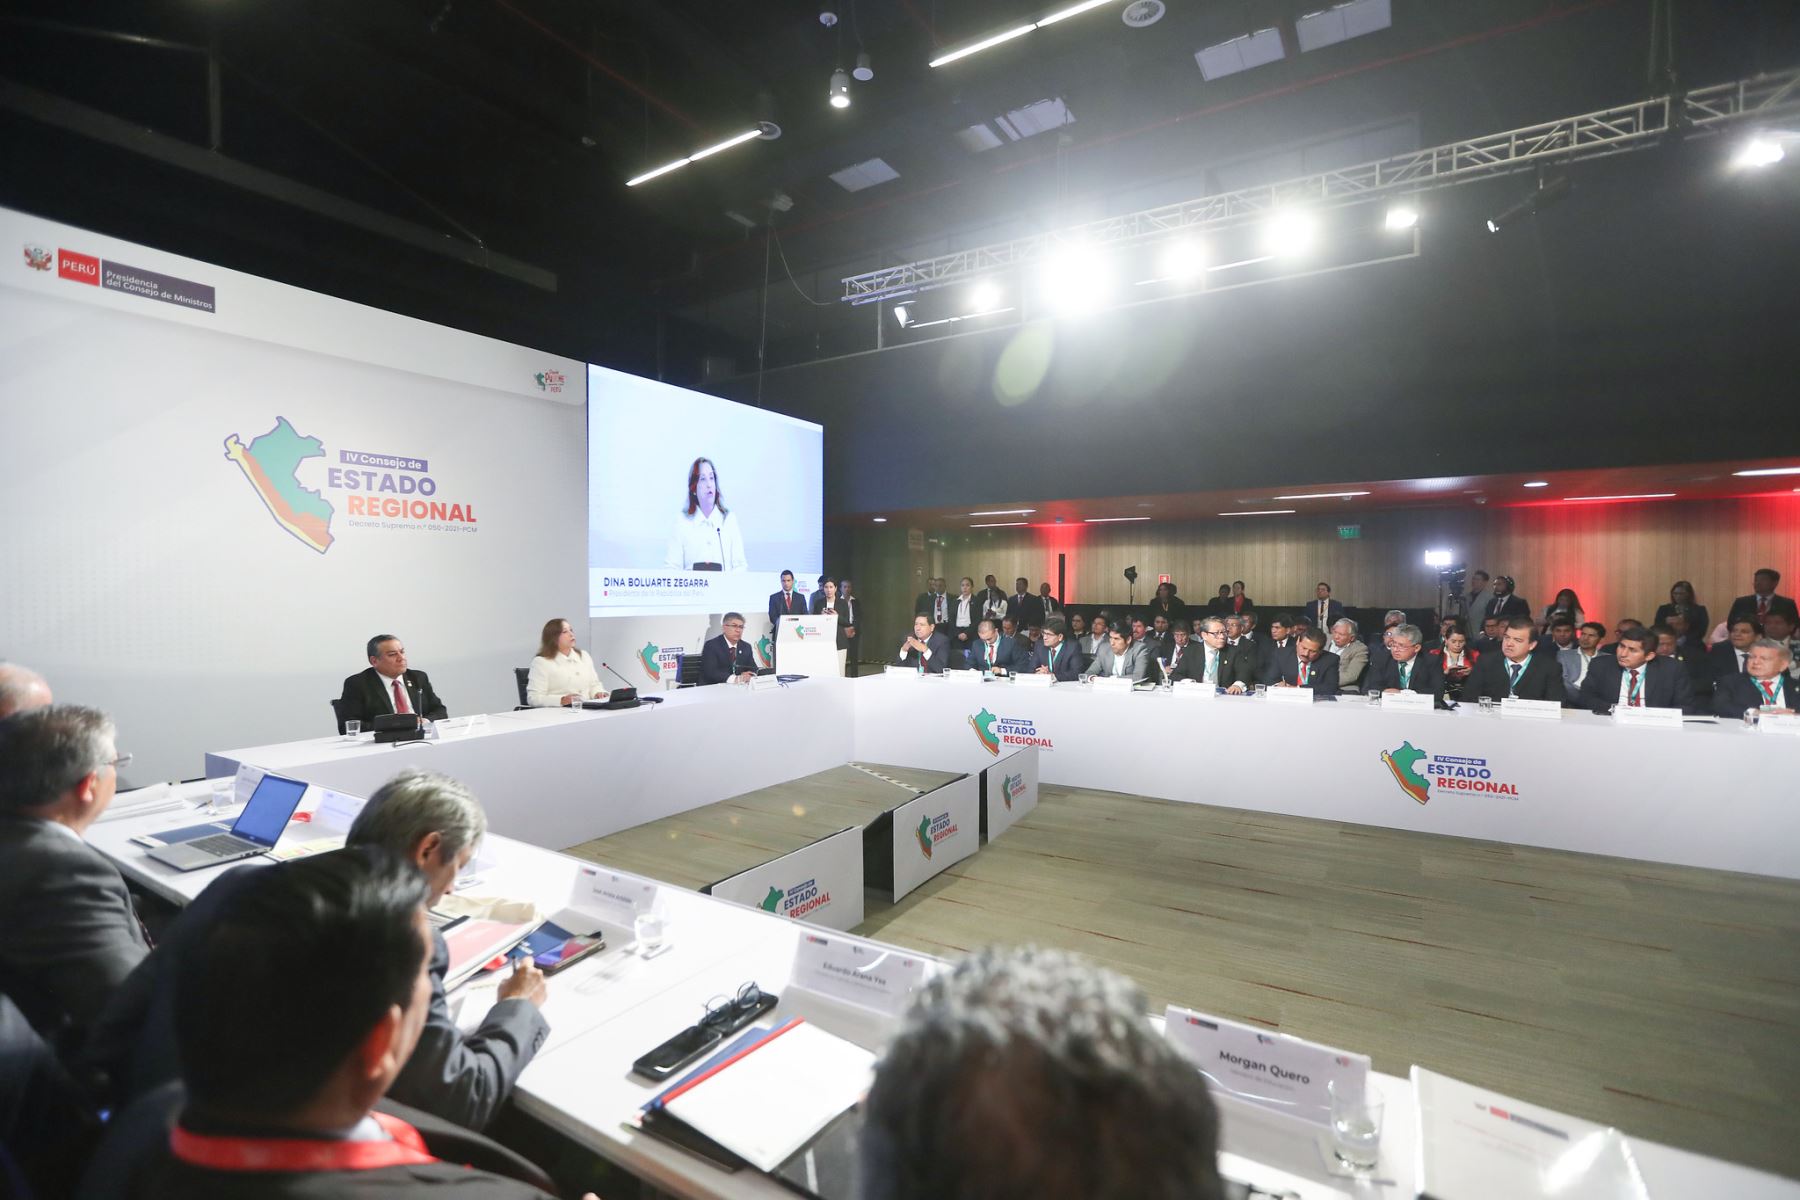 Gobiernos regionales llaman a la unidad para enfrentar la pobreza, corrupción y delincuencia. ANDINA/Prensa Presidencia